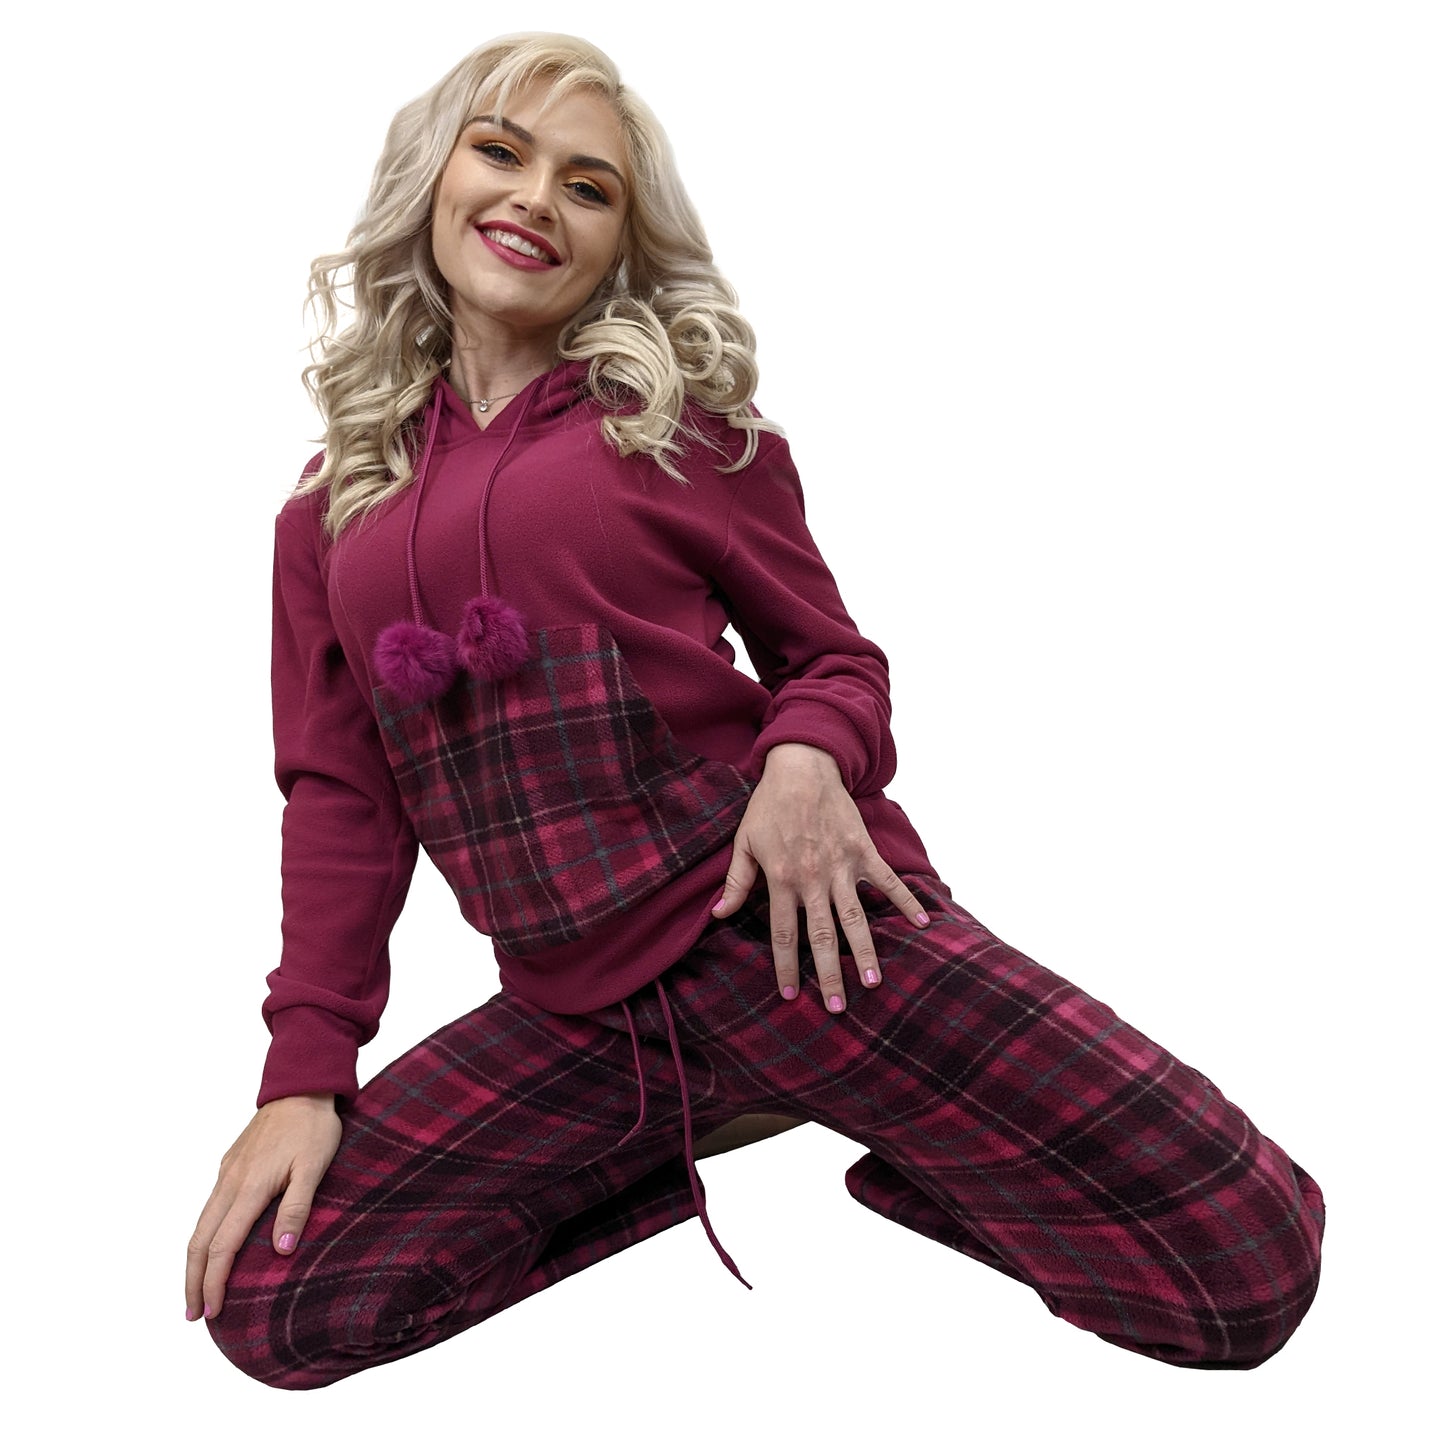 Briony Hooded Fleece Womens Pyjamas/Loungewear Set Sleepwear & Loungewear ASASonline